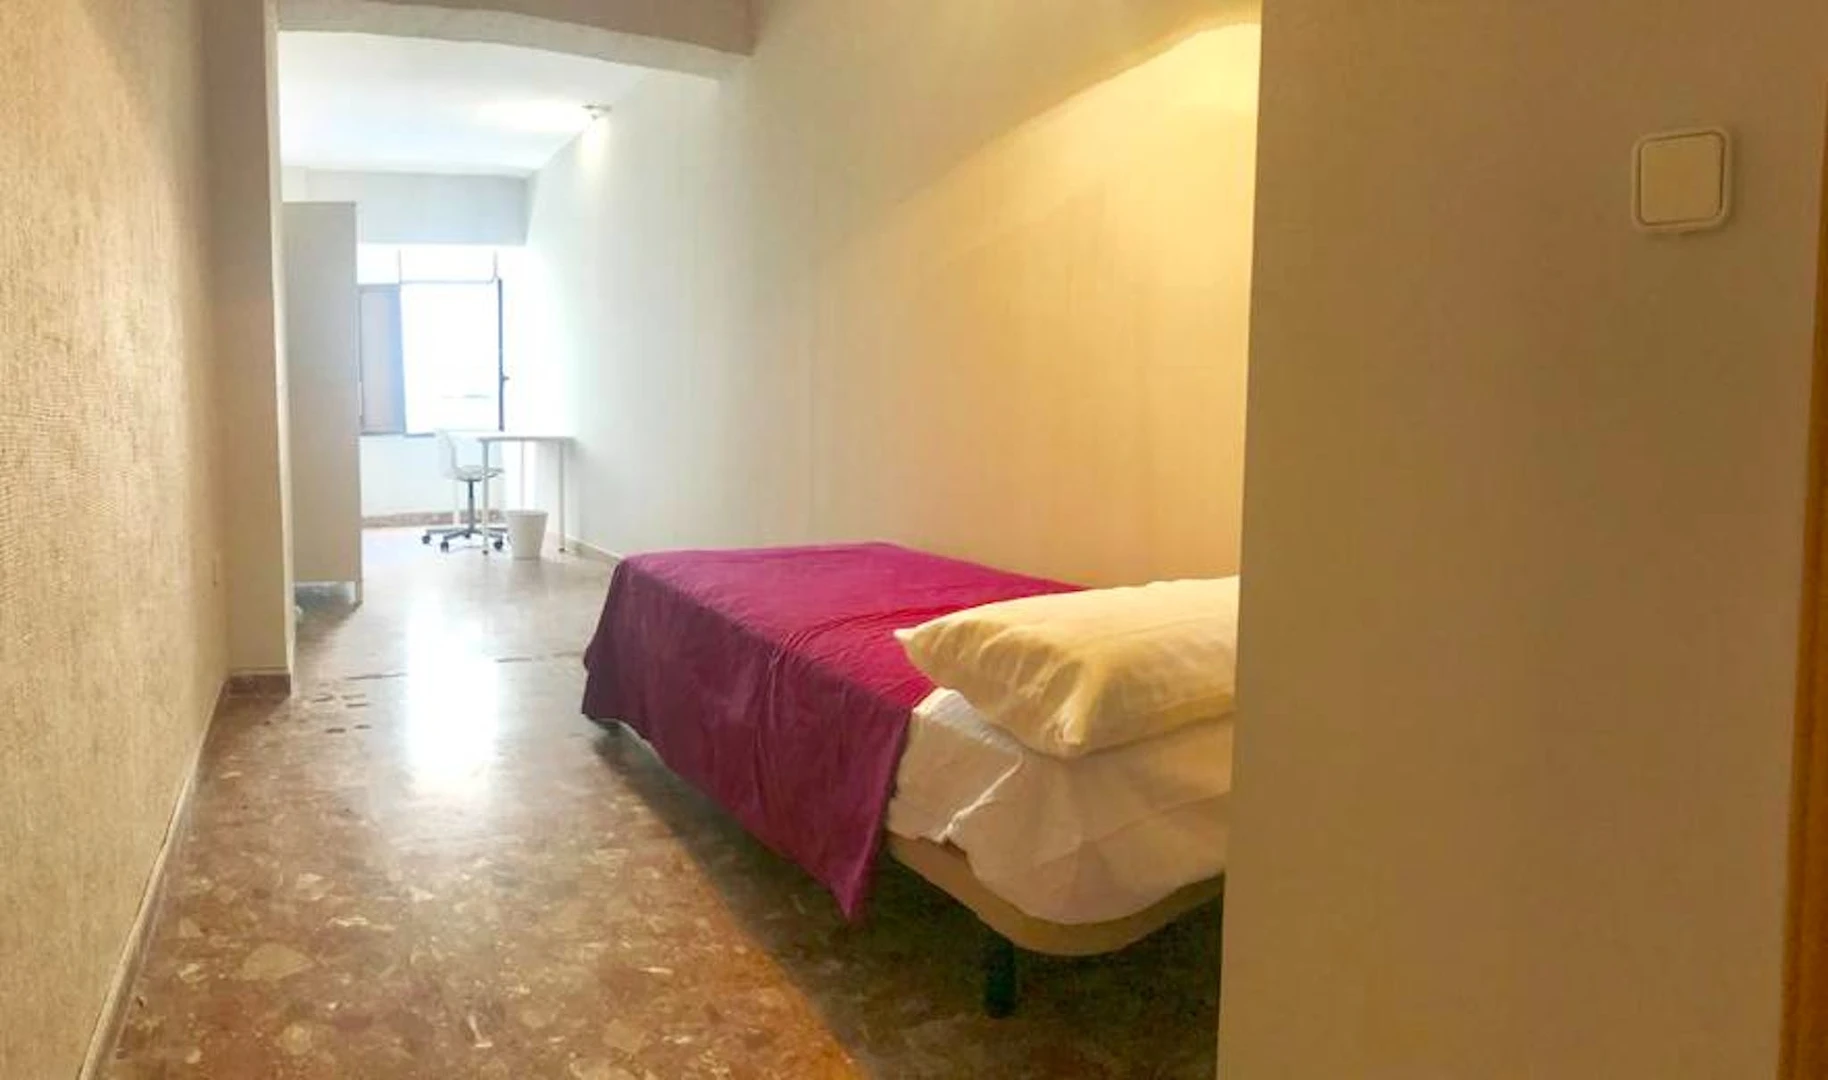 Monatliche Vermietung von Zimmern in Córdoba